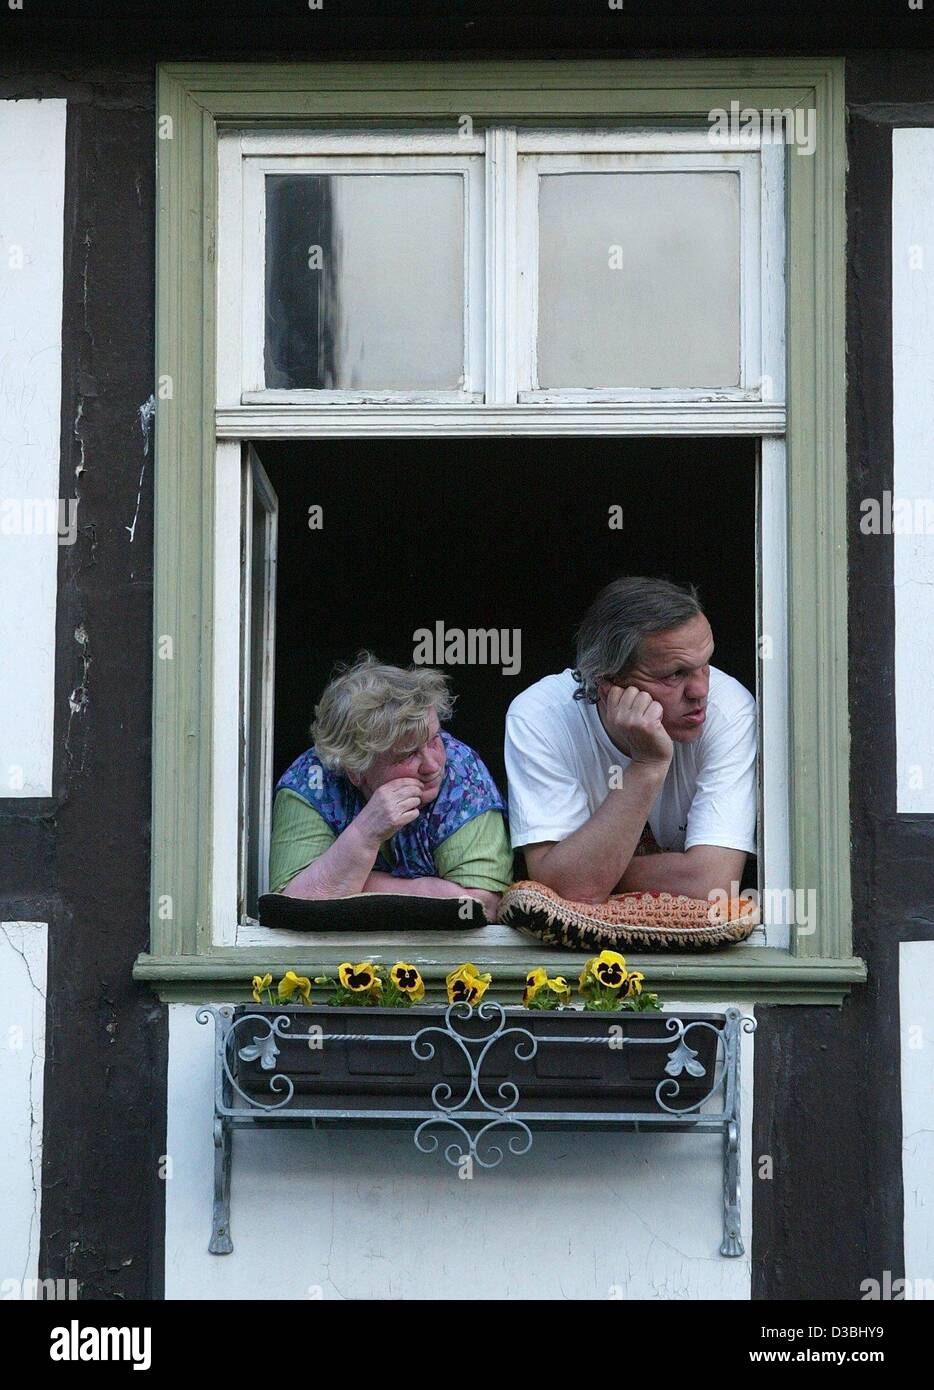 (Dpa) - un curioso giovane è comfortabley posted in corrispondenza della finestra e orologi di eventi occorsi in strada Tangermuende, Germania, 6 maggio 2003. Foto Stock